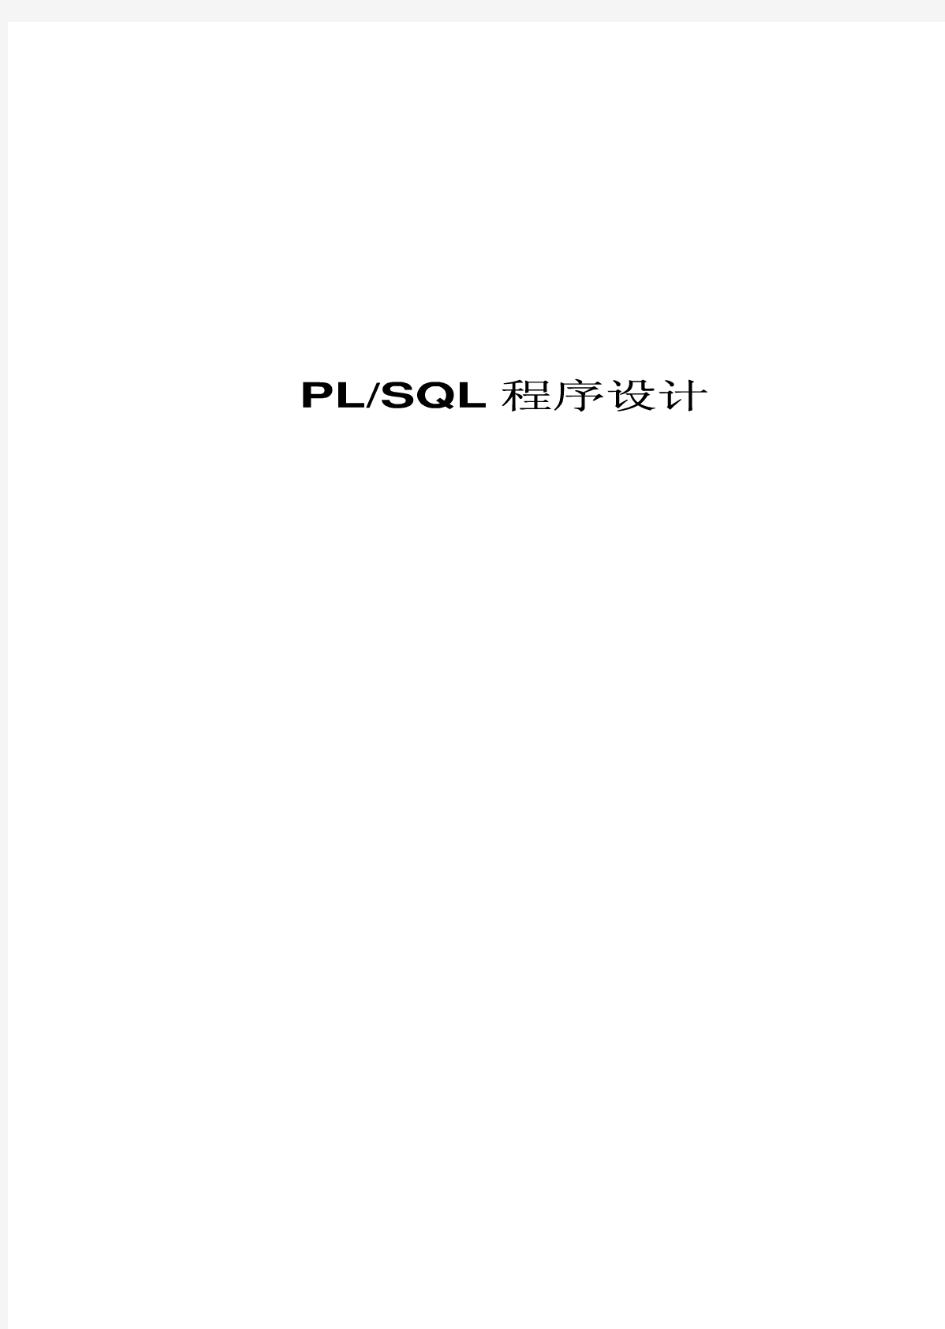 PLSQL基础教程-必看